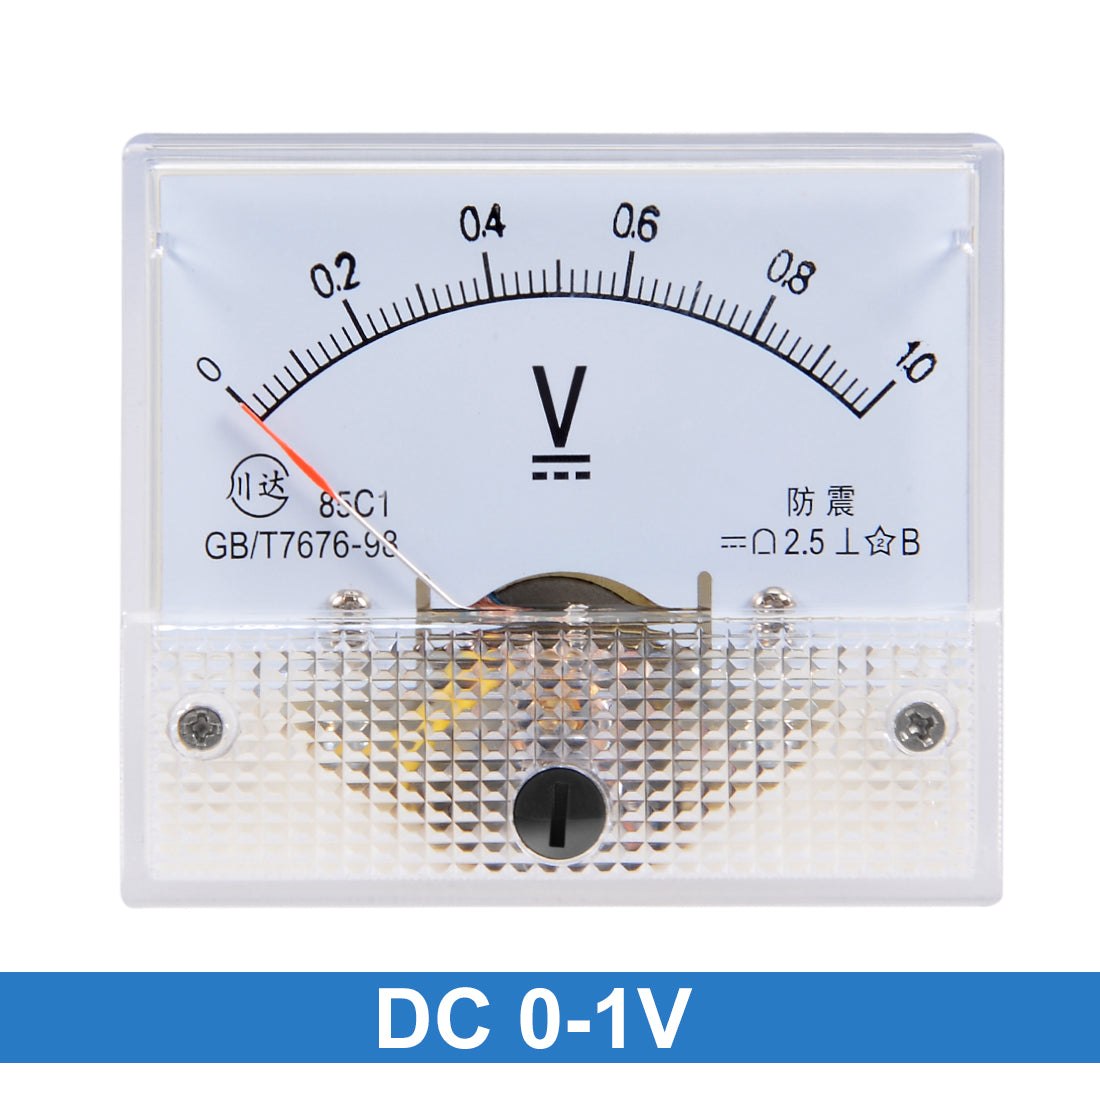 uxcell Uxcell DC 0-1V Analog Panel Voltage Gauge Volt Meter 85C1 2.5% Error Margin